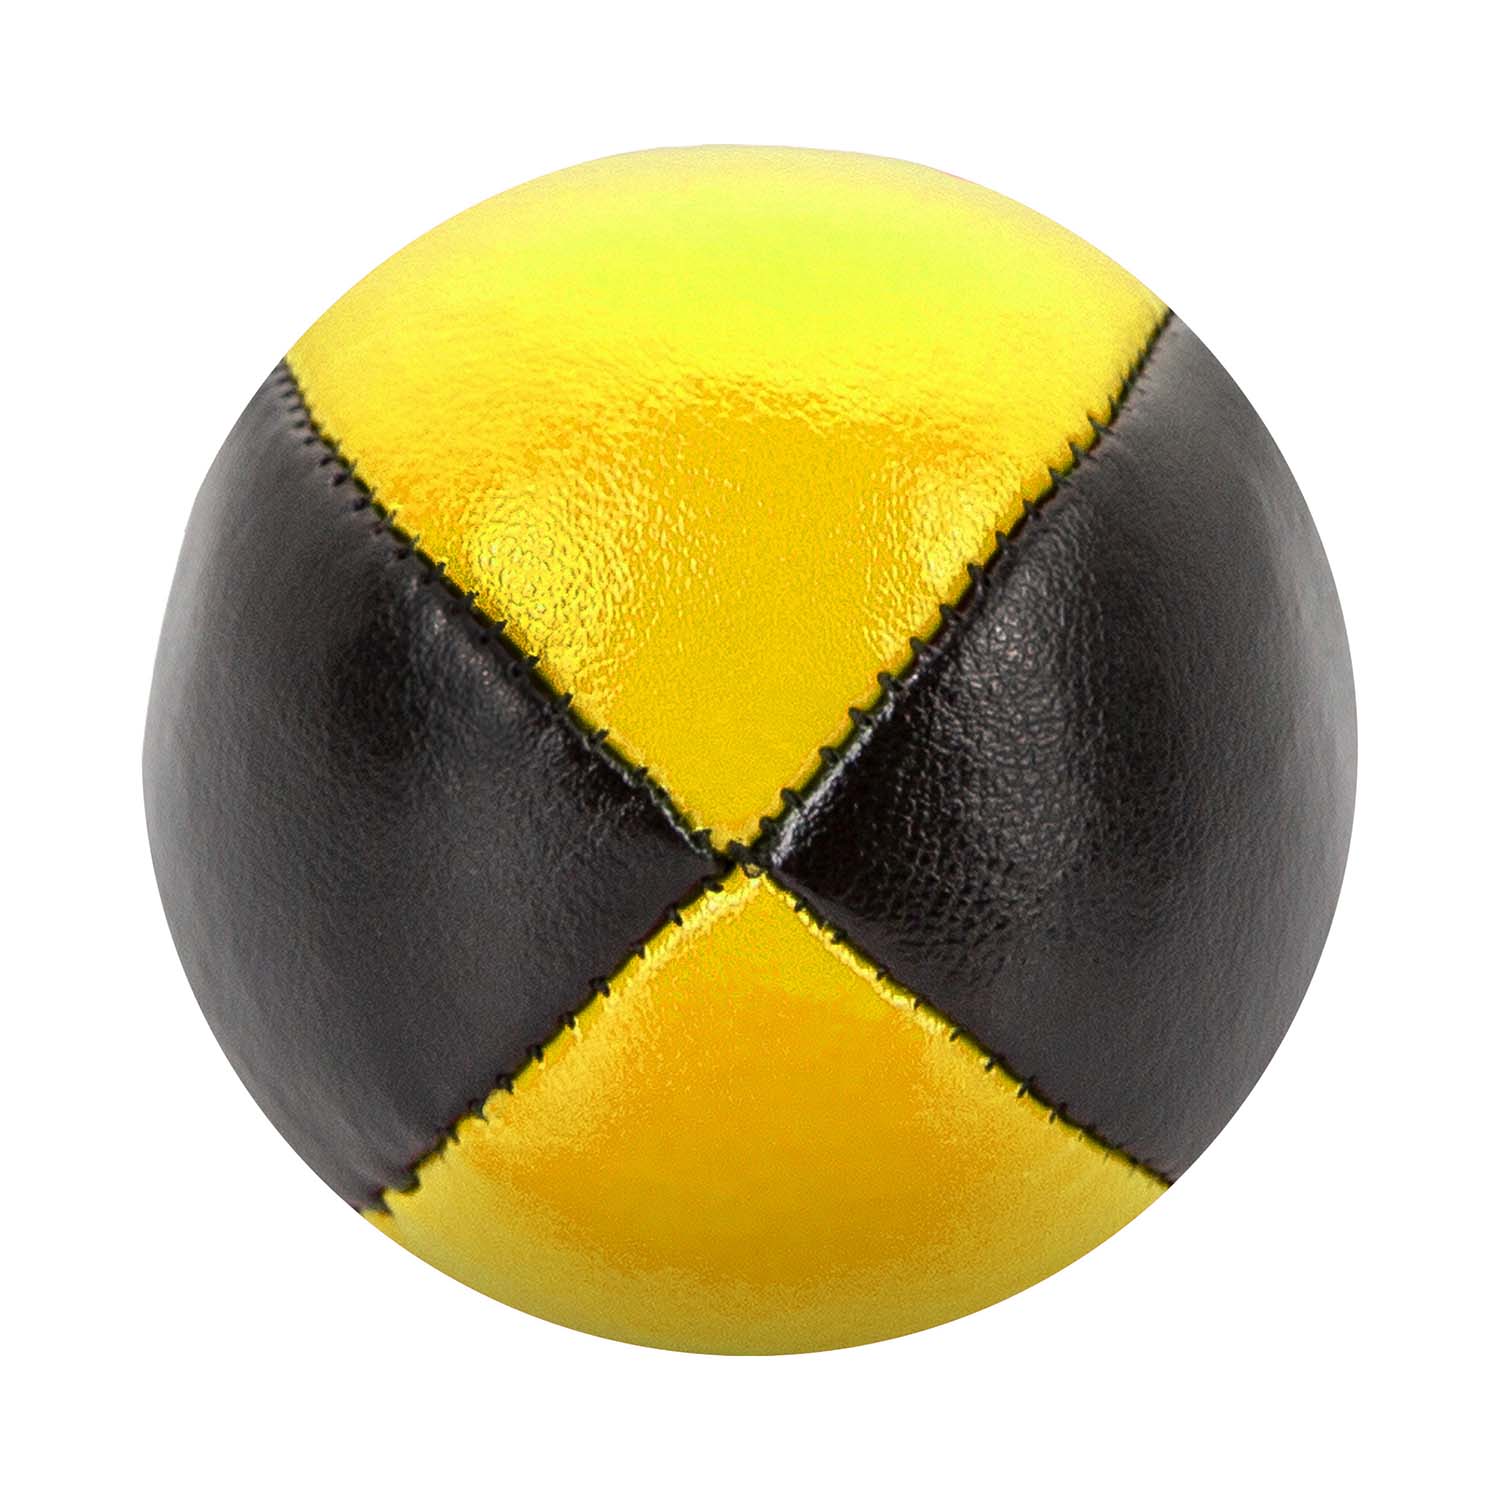 Premium Jonglageball mit 62mm und 100g in schwarz-gelb kaufen!